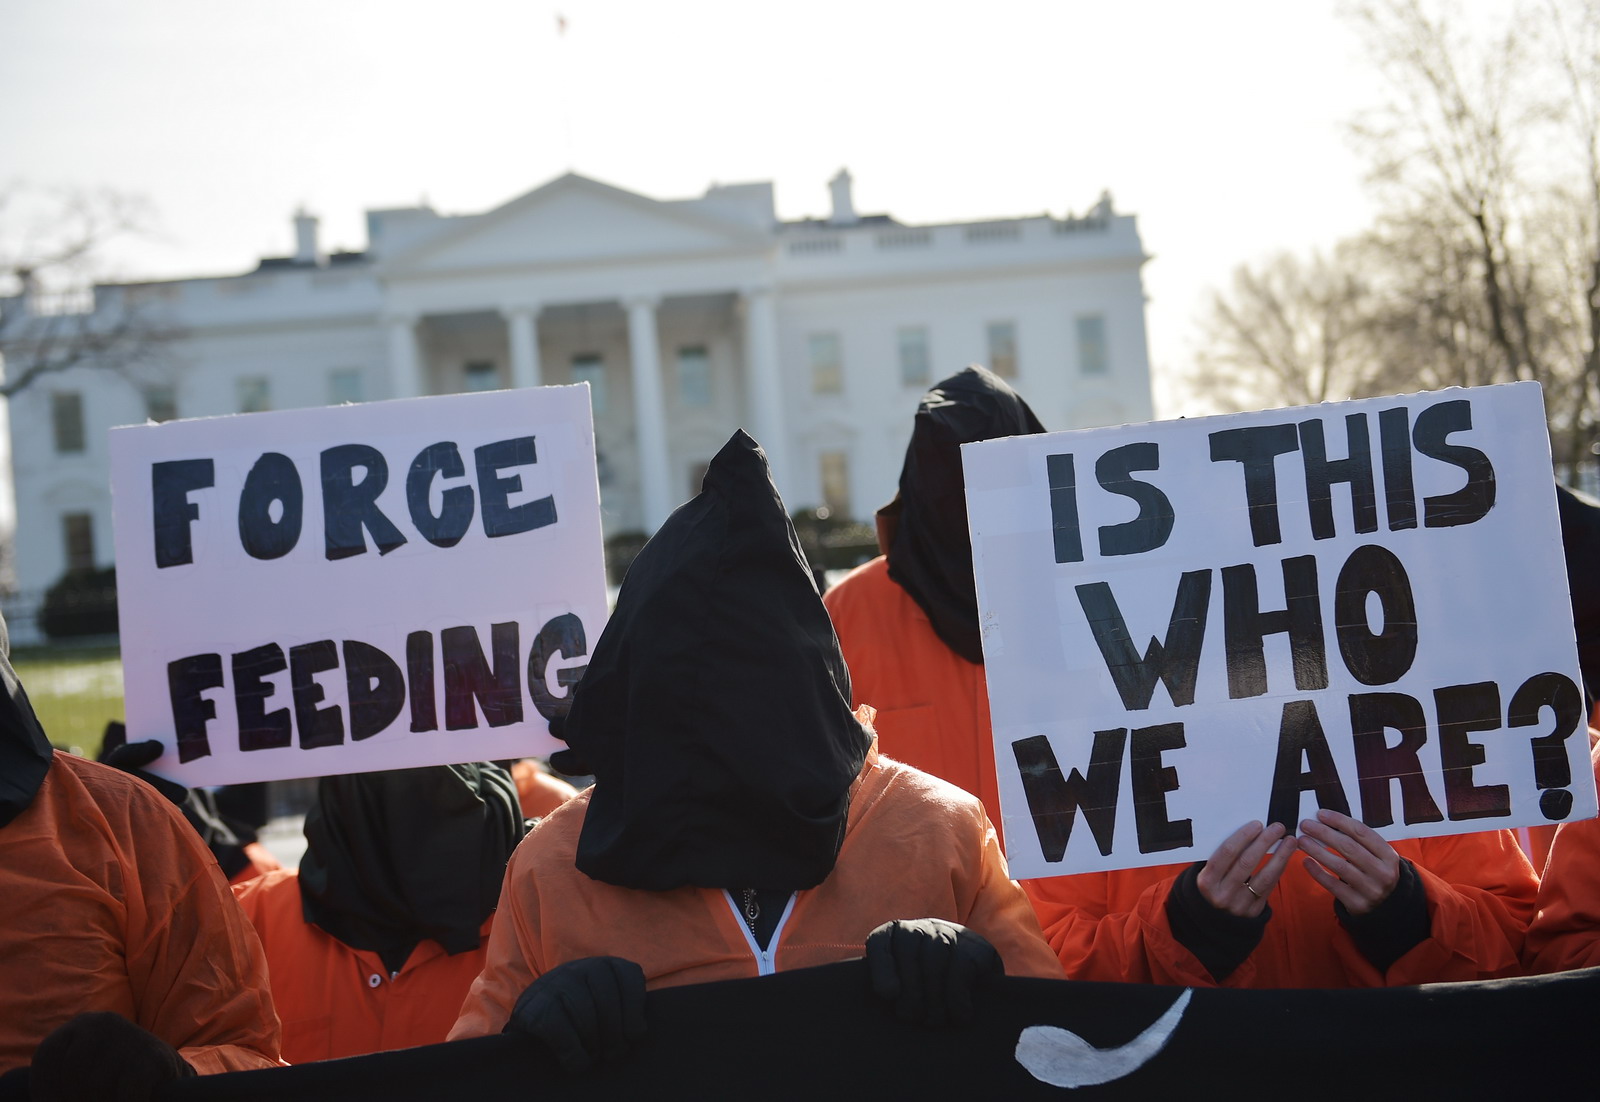 Guantanamo: öltek az őrök